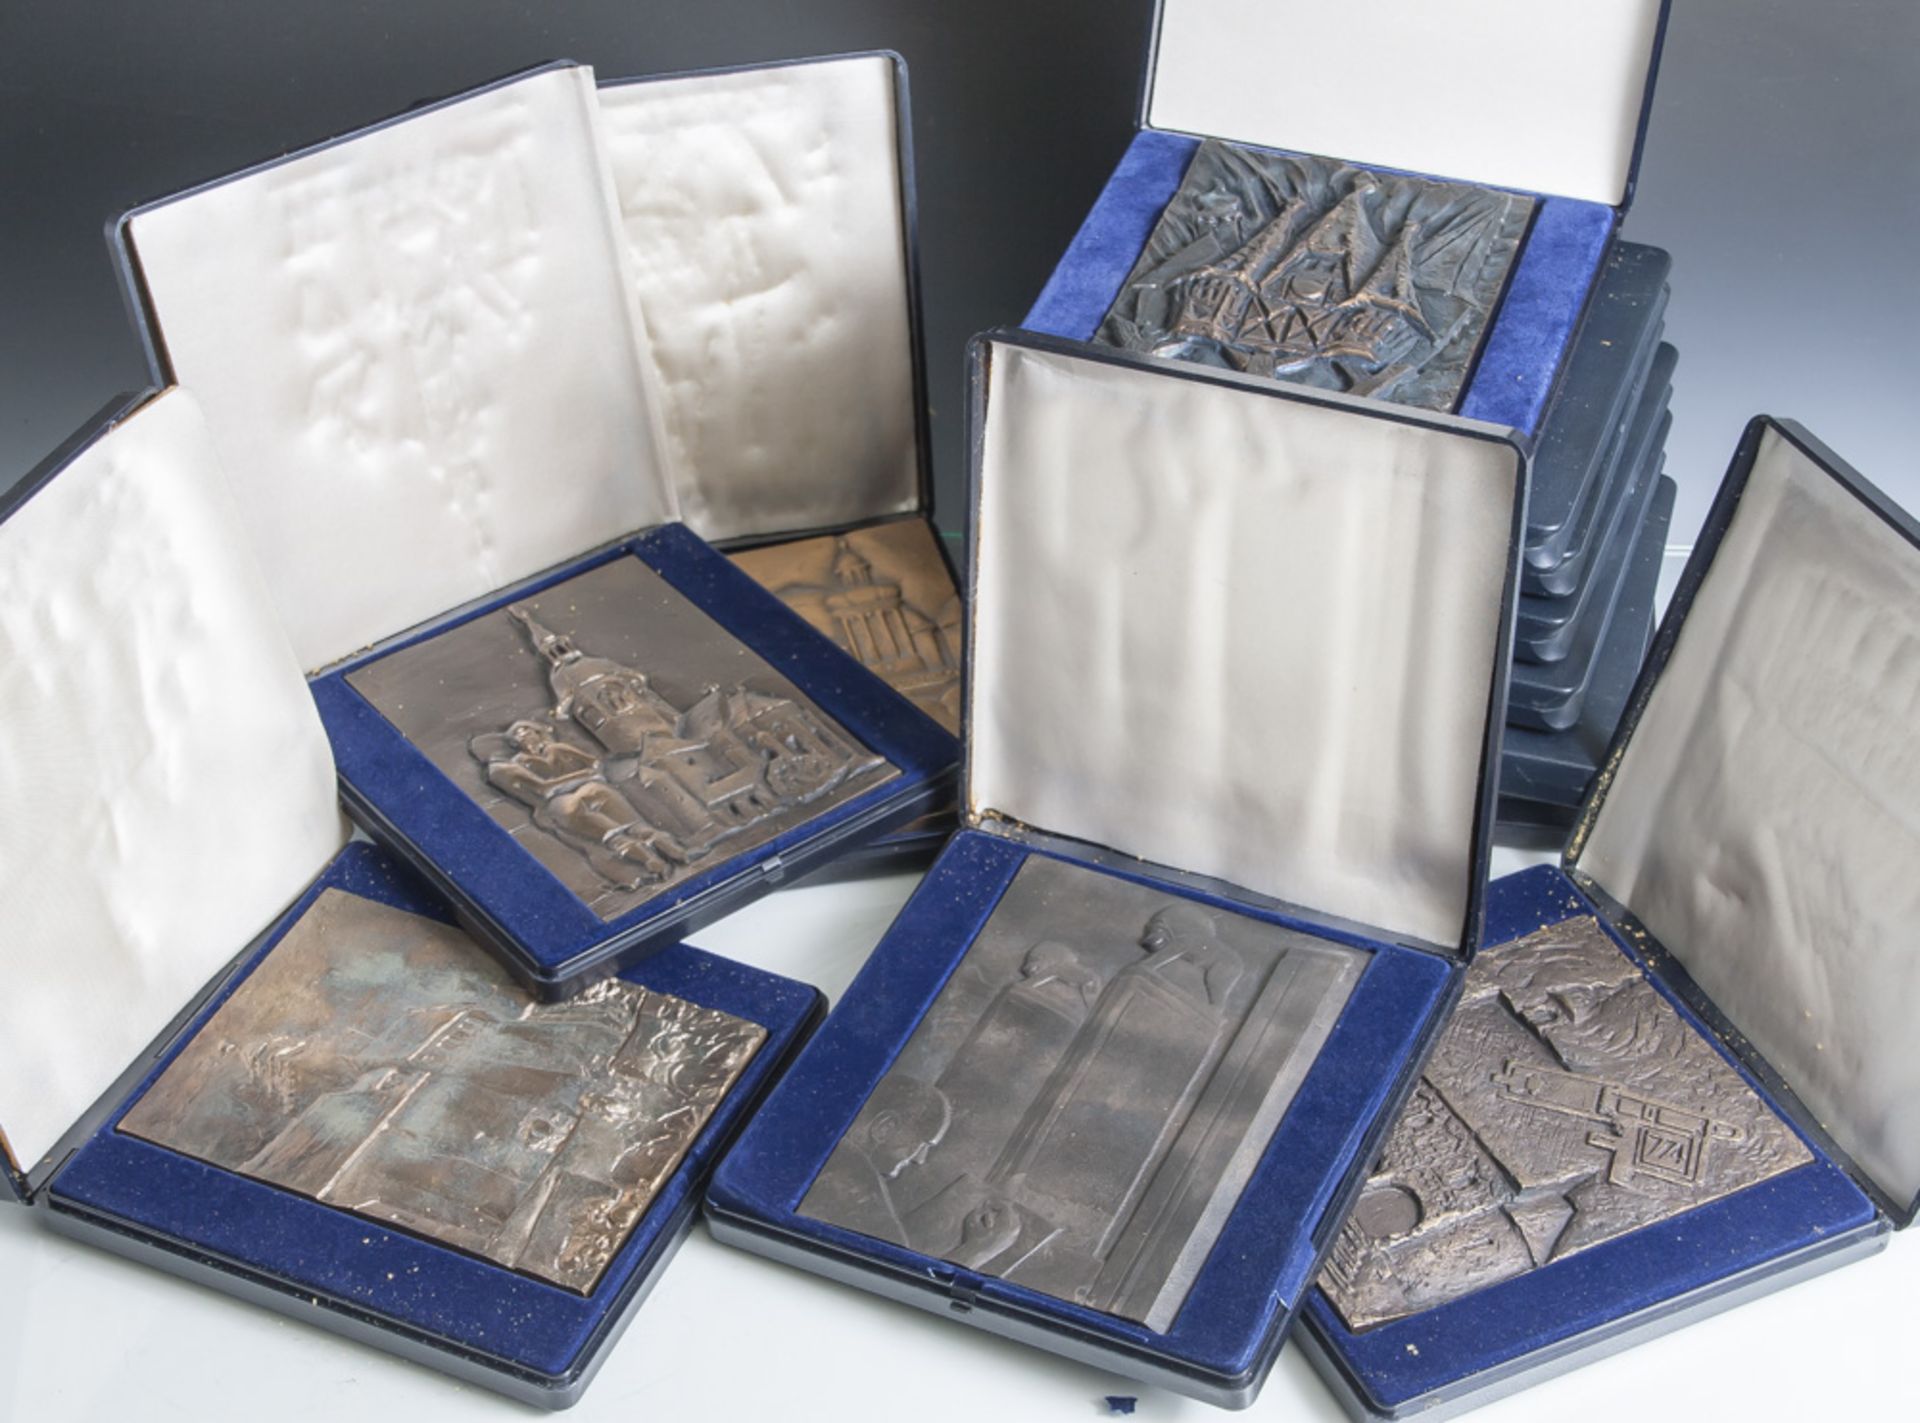 Konvolut von 12 Reliefplatten aus der Reihe "Schöne Baudenkmäler", Südhessische Gas und Wasser